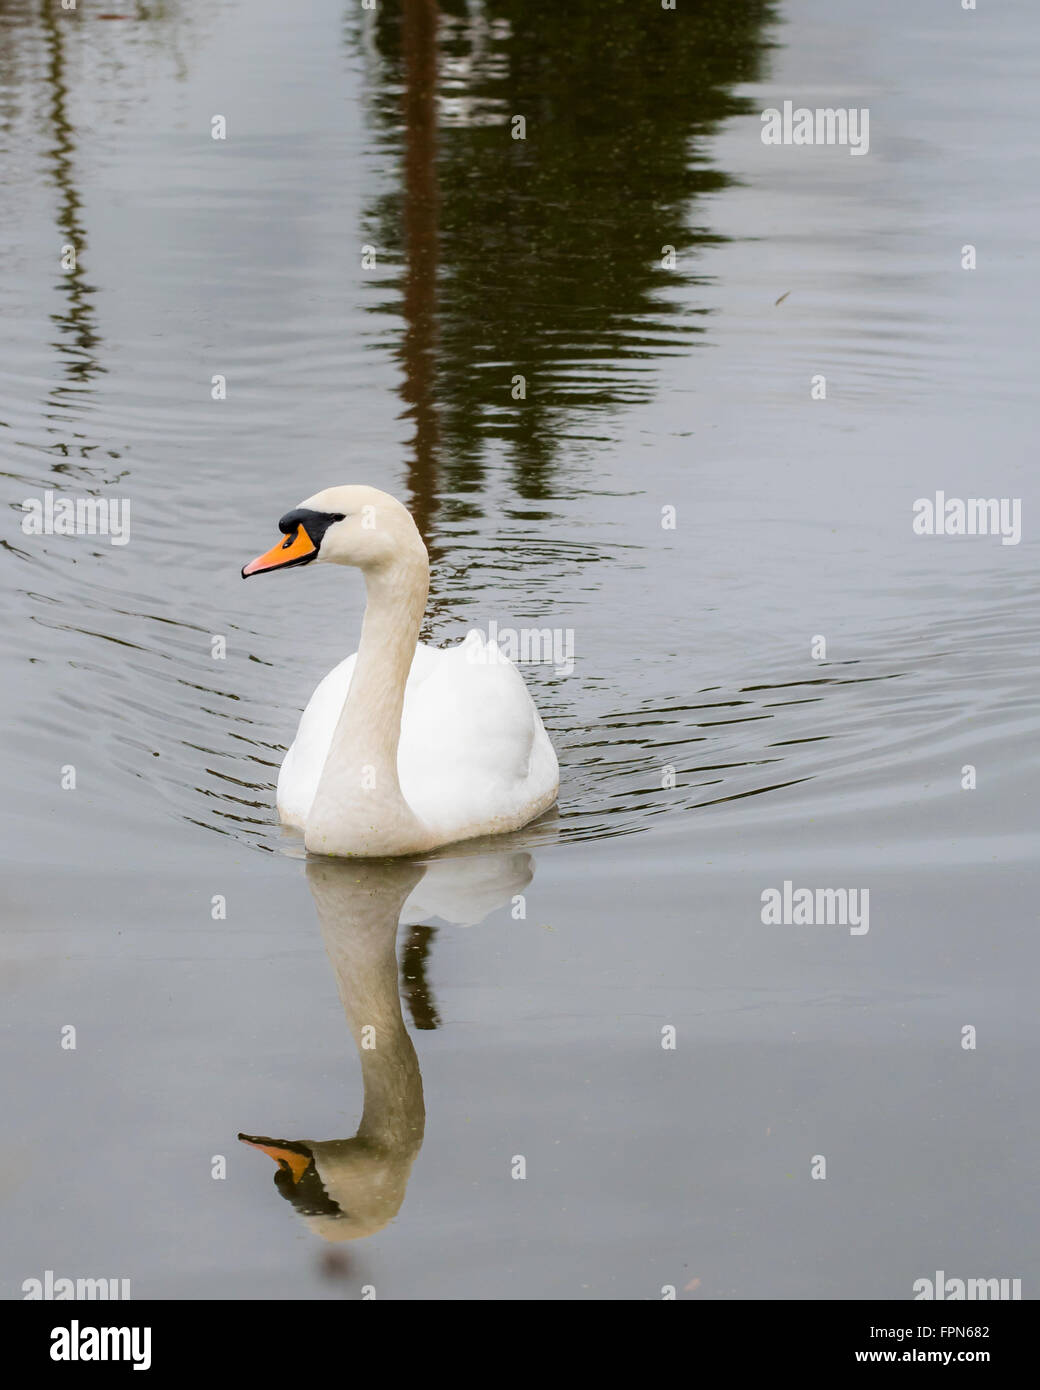 Solo cisne nadando en un canal, en el norte de Inglaterra, con una reflexión de la cabeza y el cuello en el espejo como superficie de agua Foto de stock